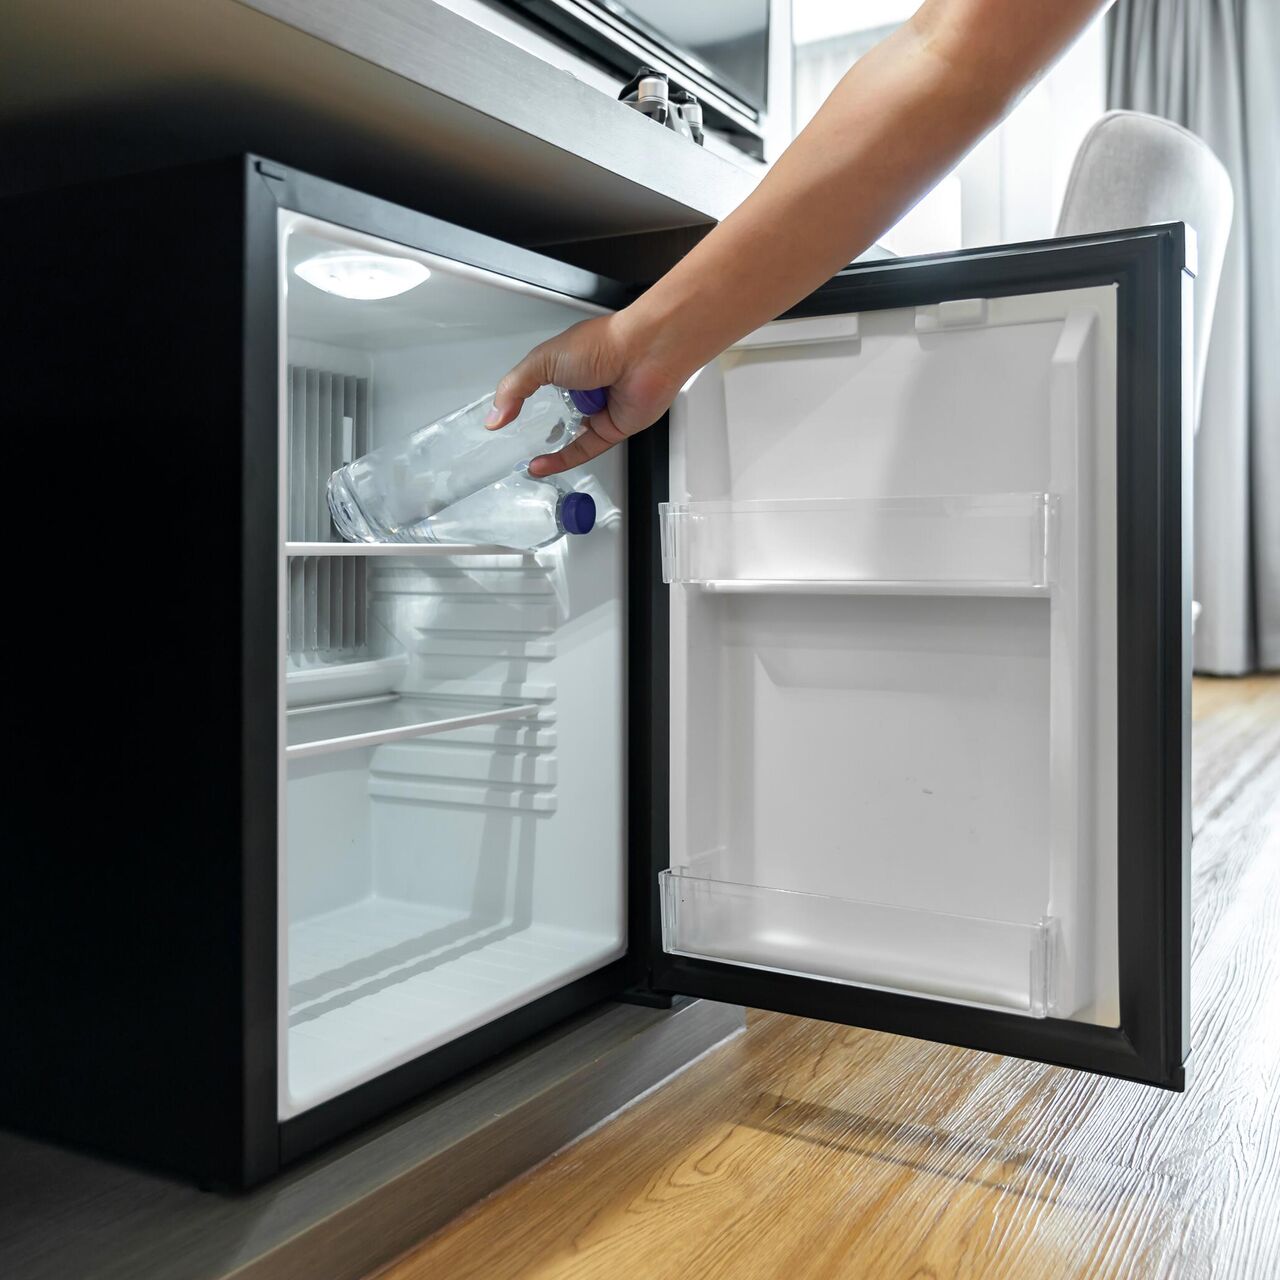 Покраска холодильника — простой способ обновить старый холодильник ✔️